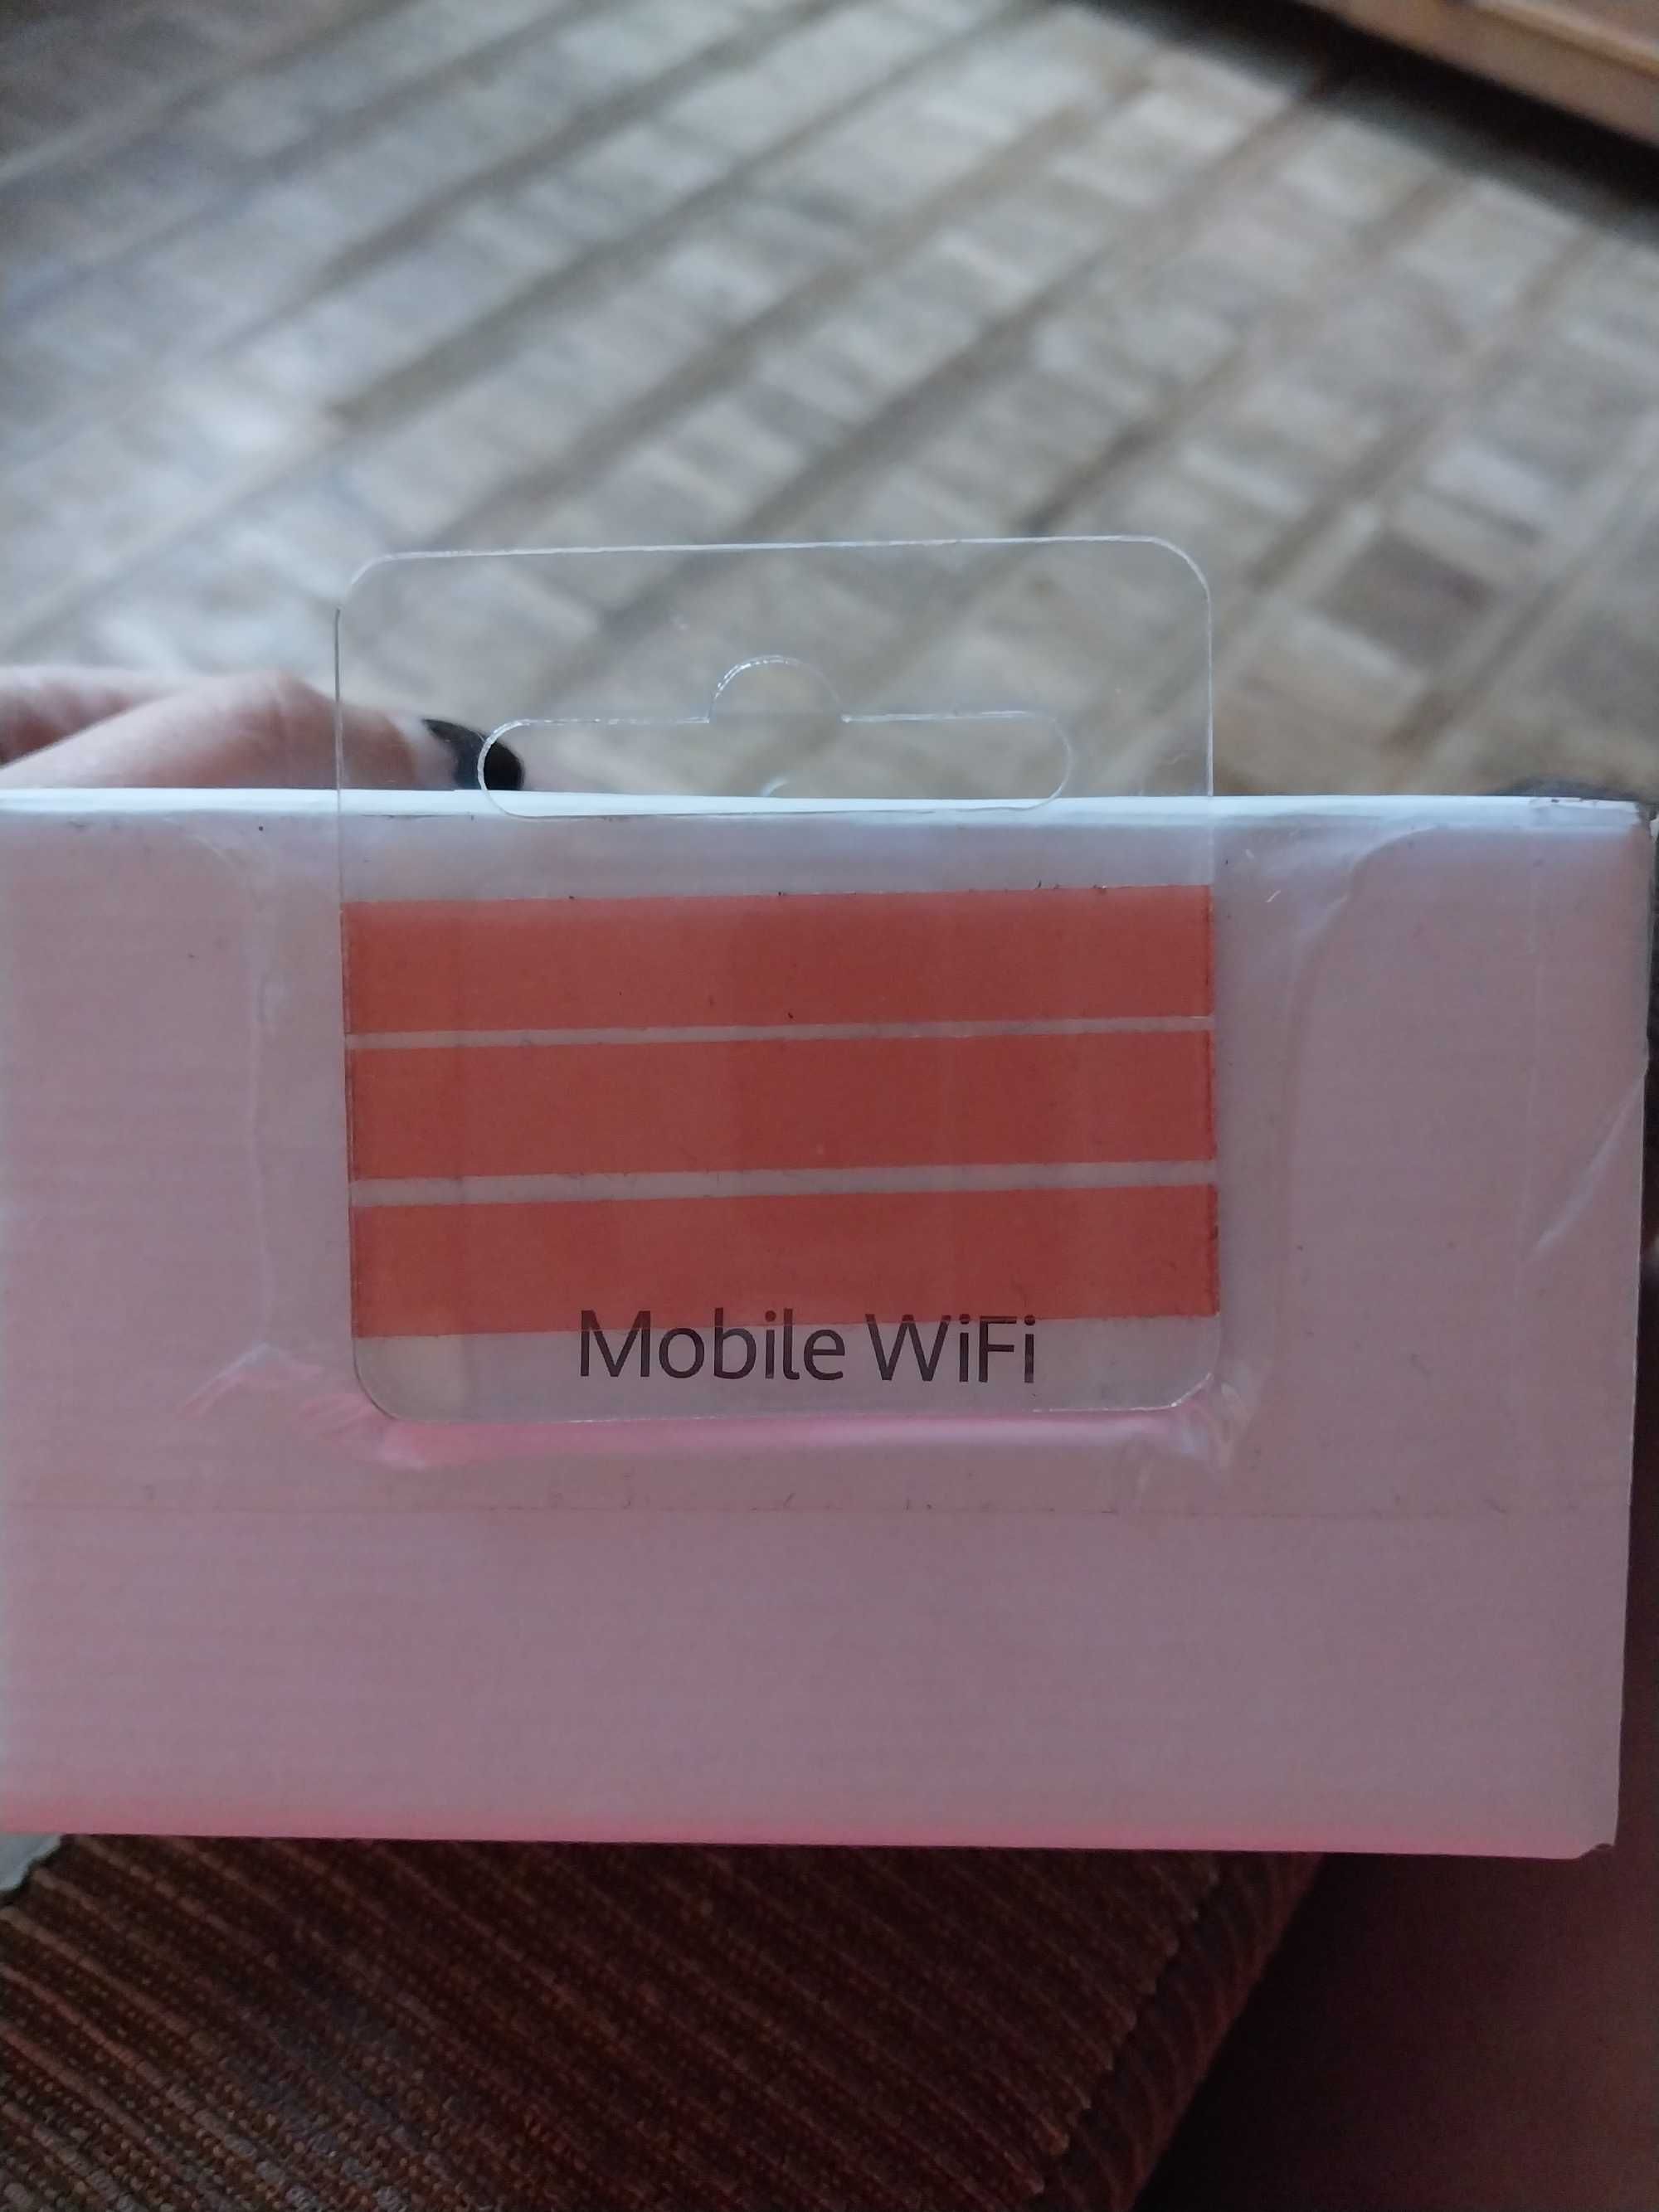 Mobile WiFi Model:E5576-325